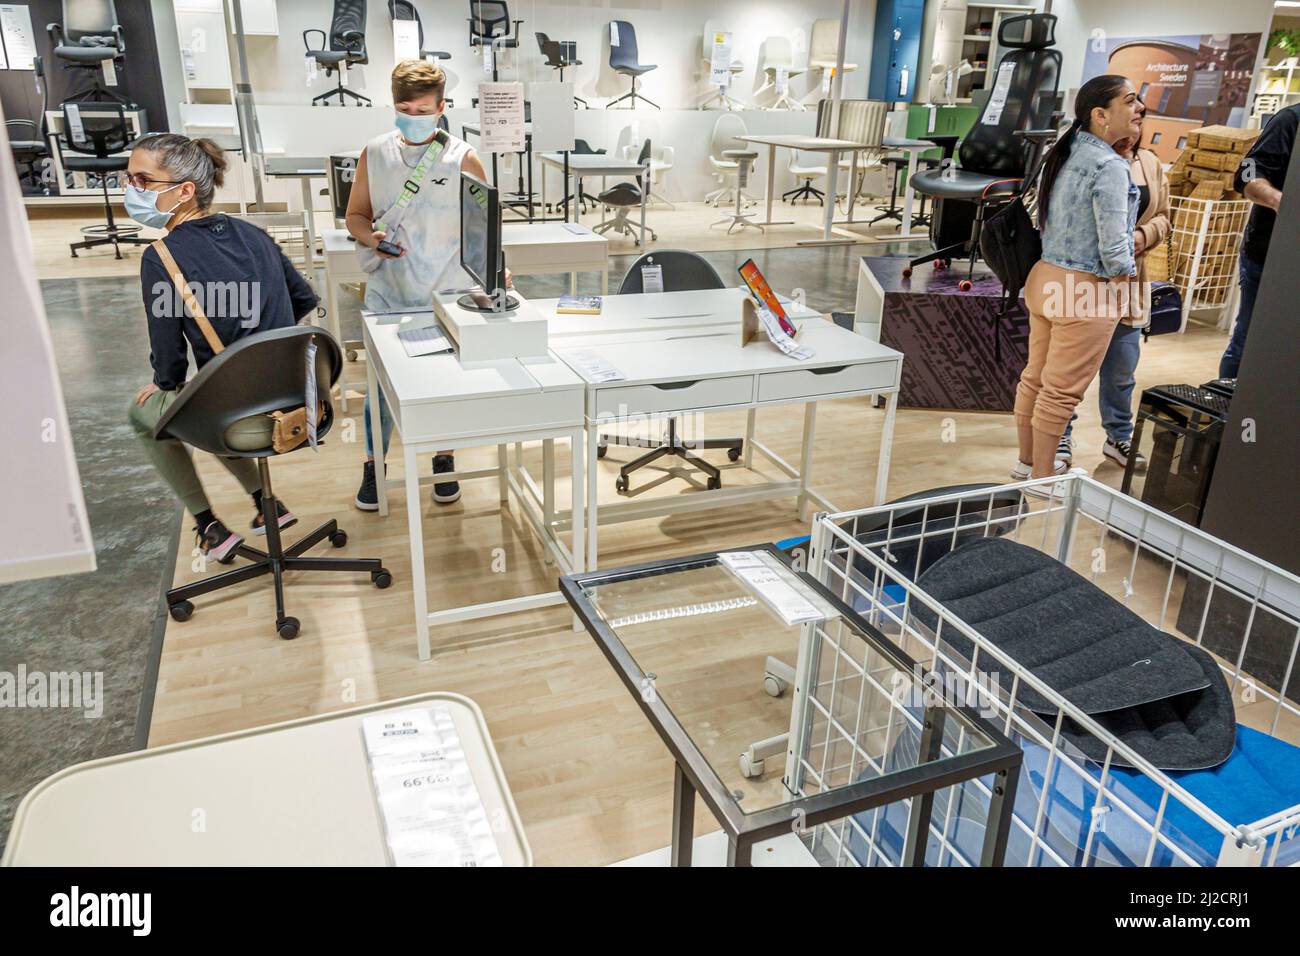 Miami Florida IKEA Haushaltswaren Einrichtungsgegenstände Accessoires Möbel Dekor Shopping Shopper innen Innenauslage Verkauf Frauen tragen Gesichtsmasken Covid-19 Stockfoto